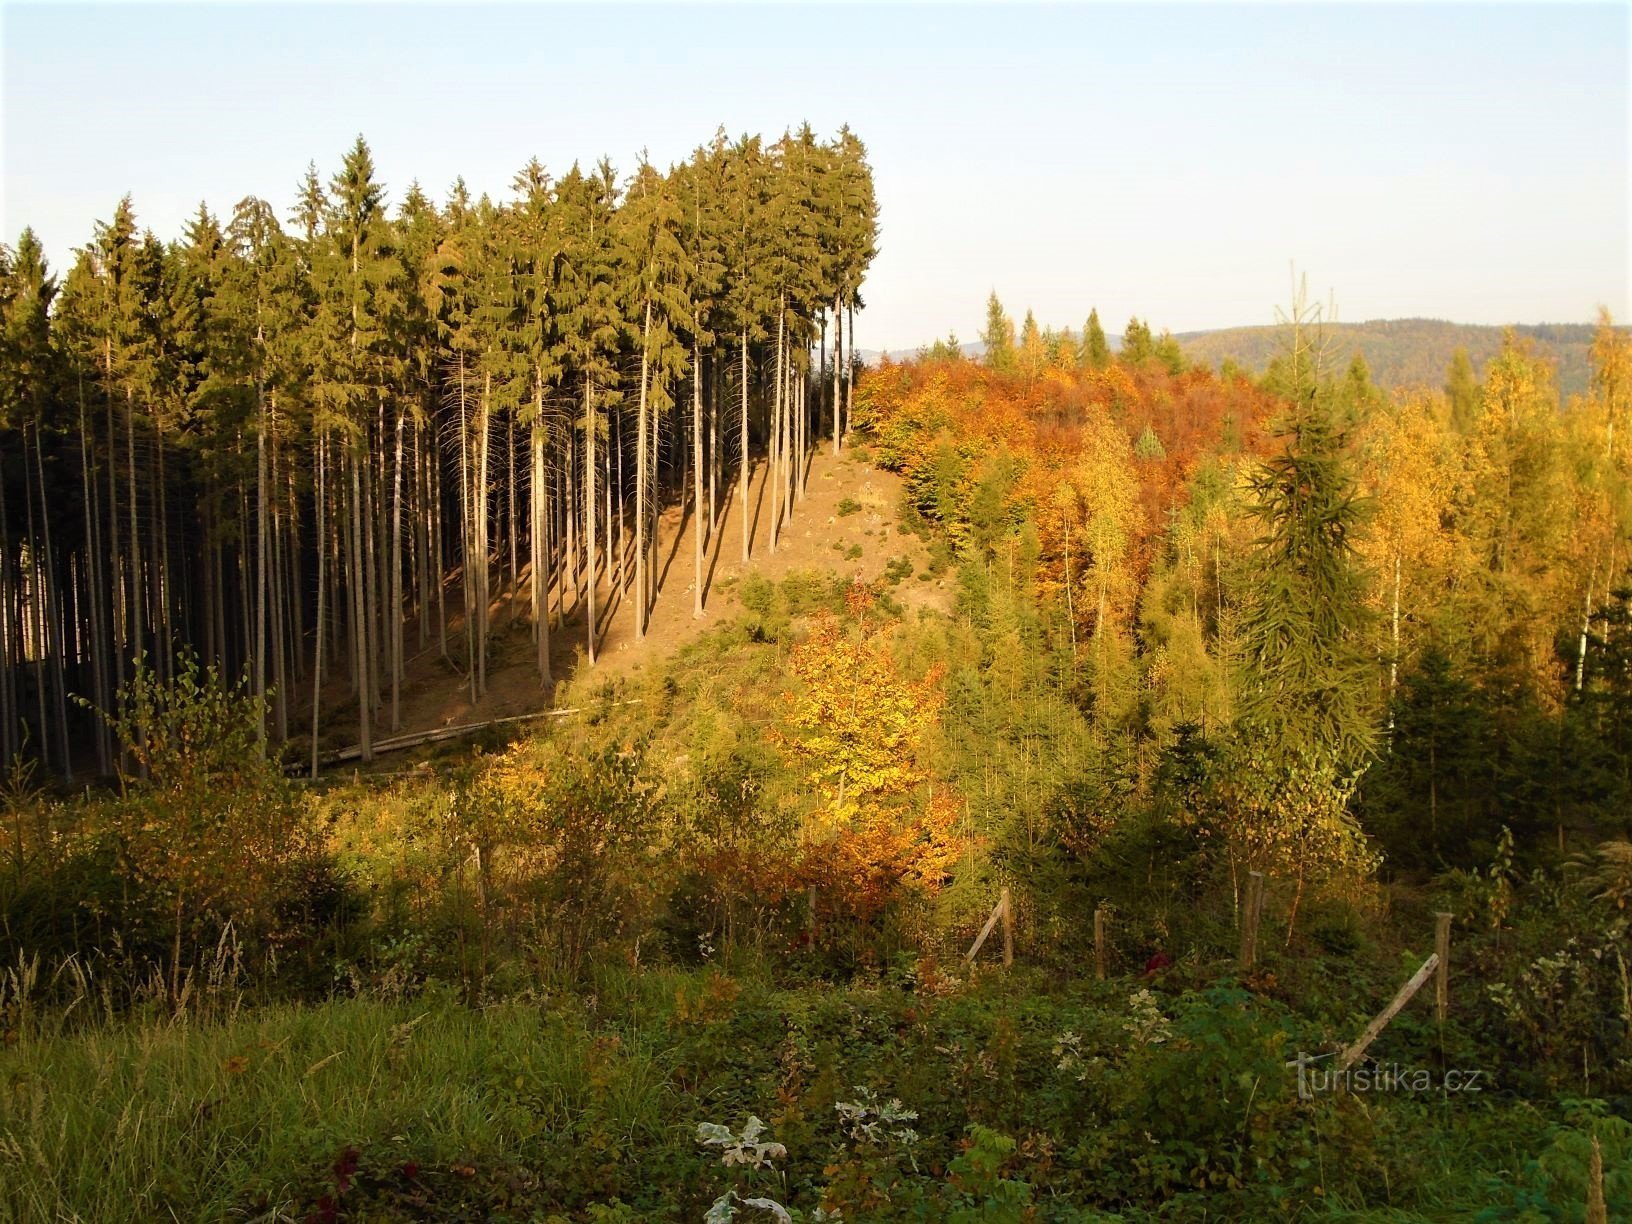 Wälder bei Spáleného kopce (Slatina nad Úpou, 17.10.2017)